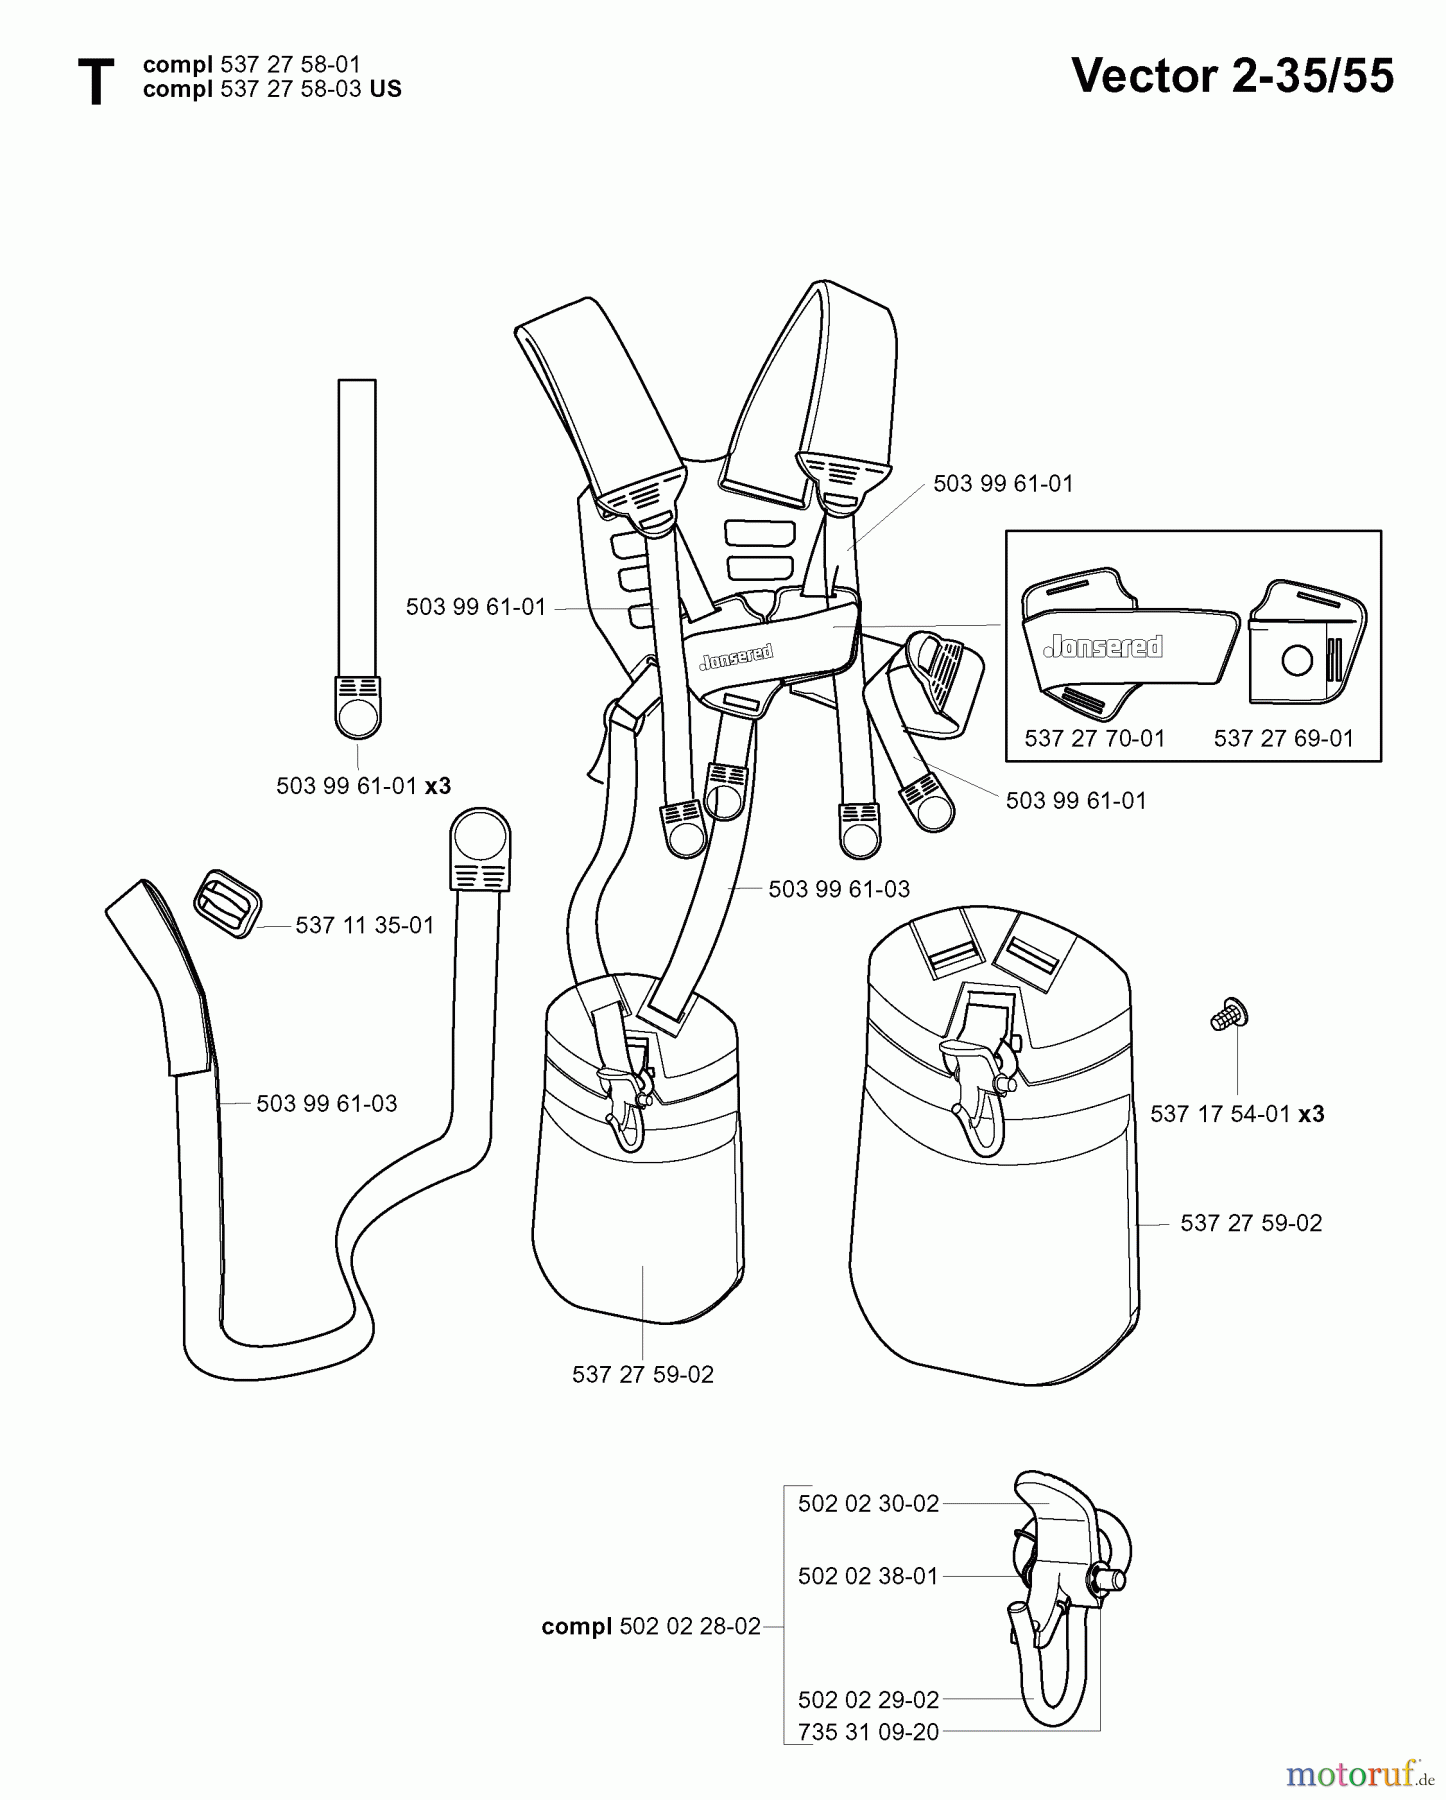  Jonsered Motorsensen, Trimmer GR50 EPA - Jonsered String/Brush Trimmer (2006-01) HARNESS #1